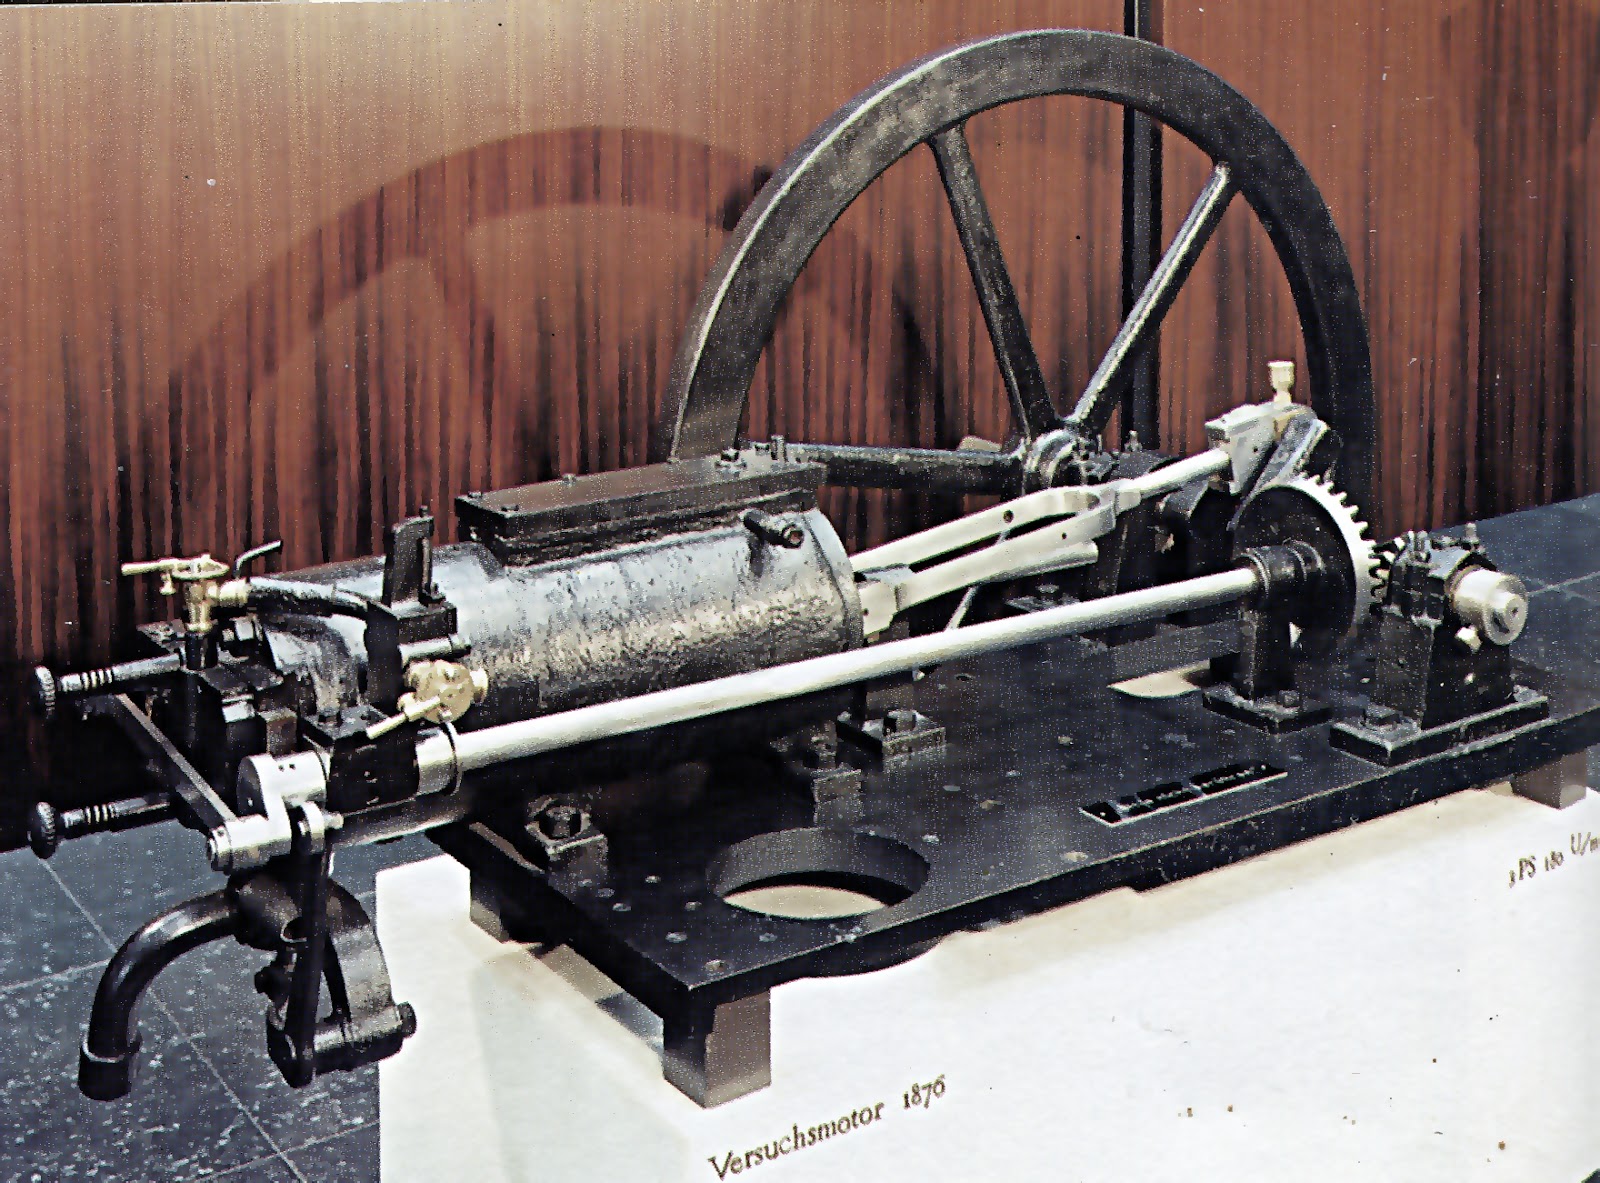 Оригинальный четырехтактный двигатель Отто по-прежнему работал на «светильном газе»